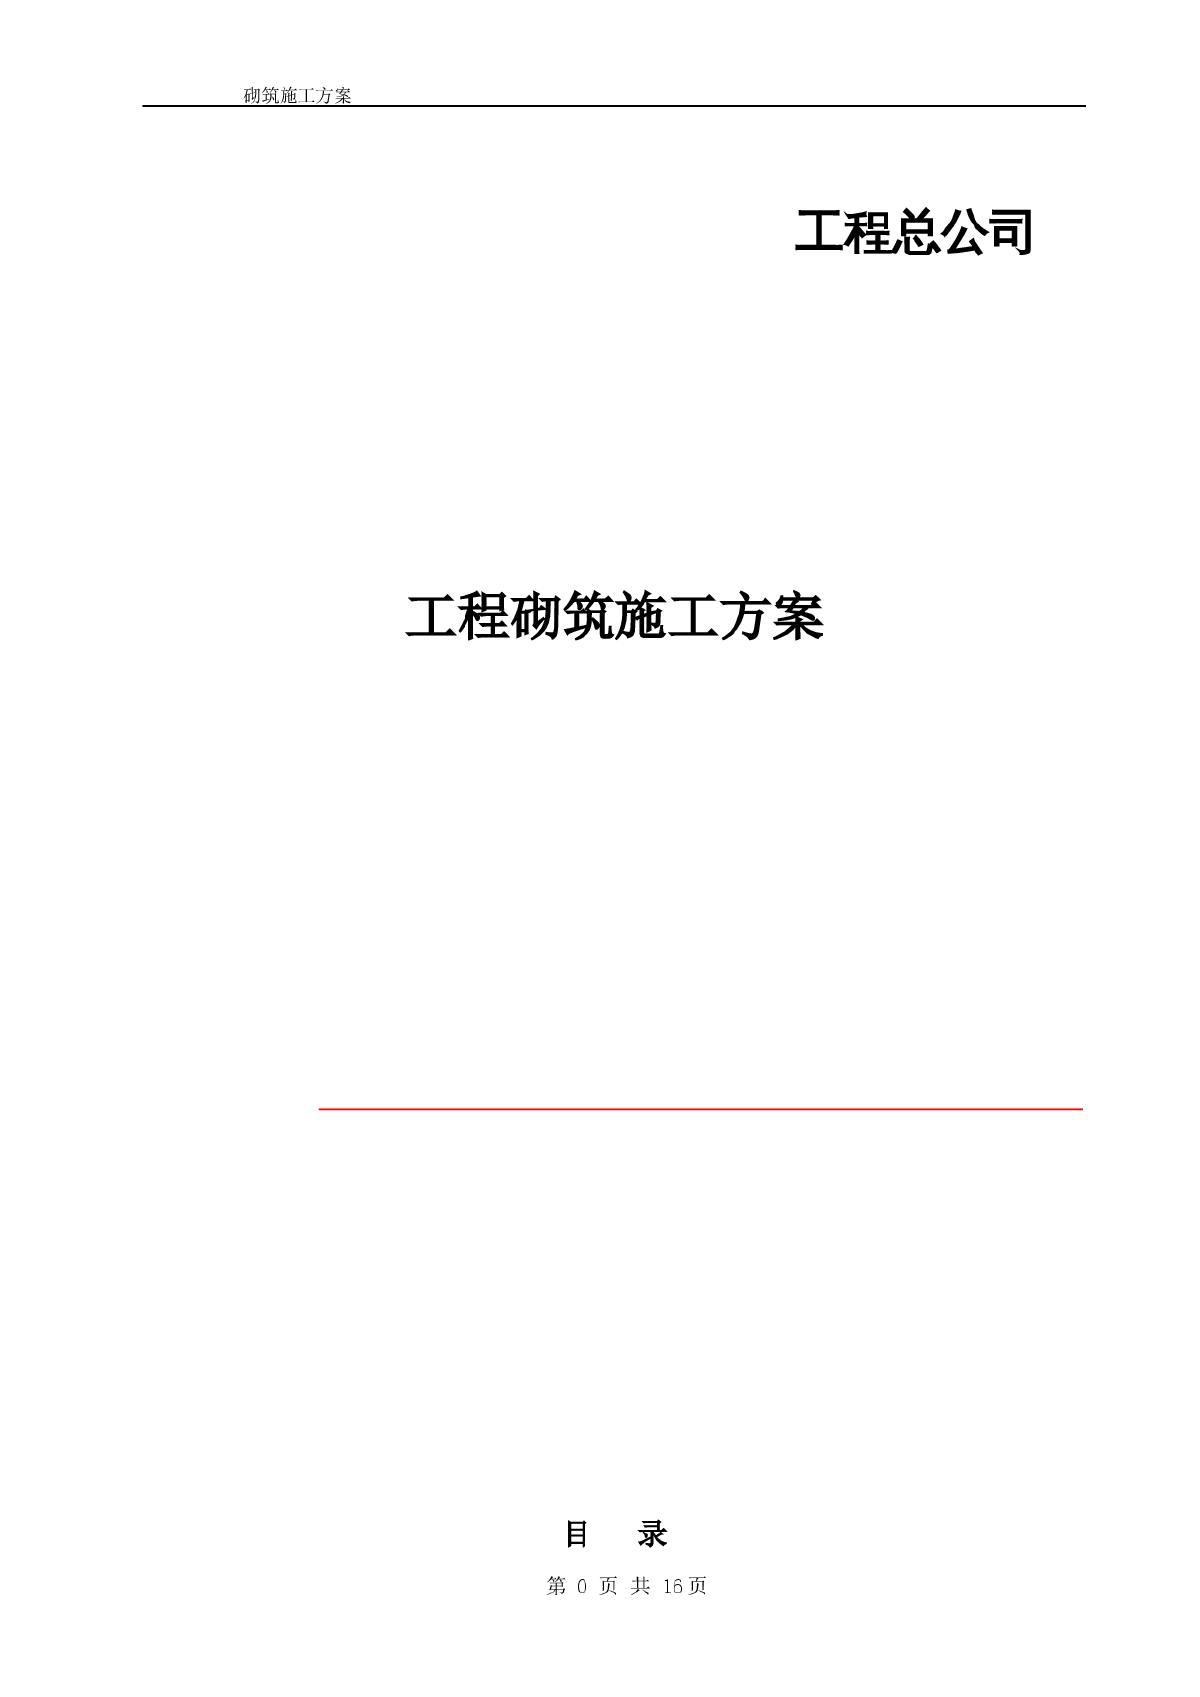 [北京]办公楼工程砌筑工程施工方案(附图)